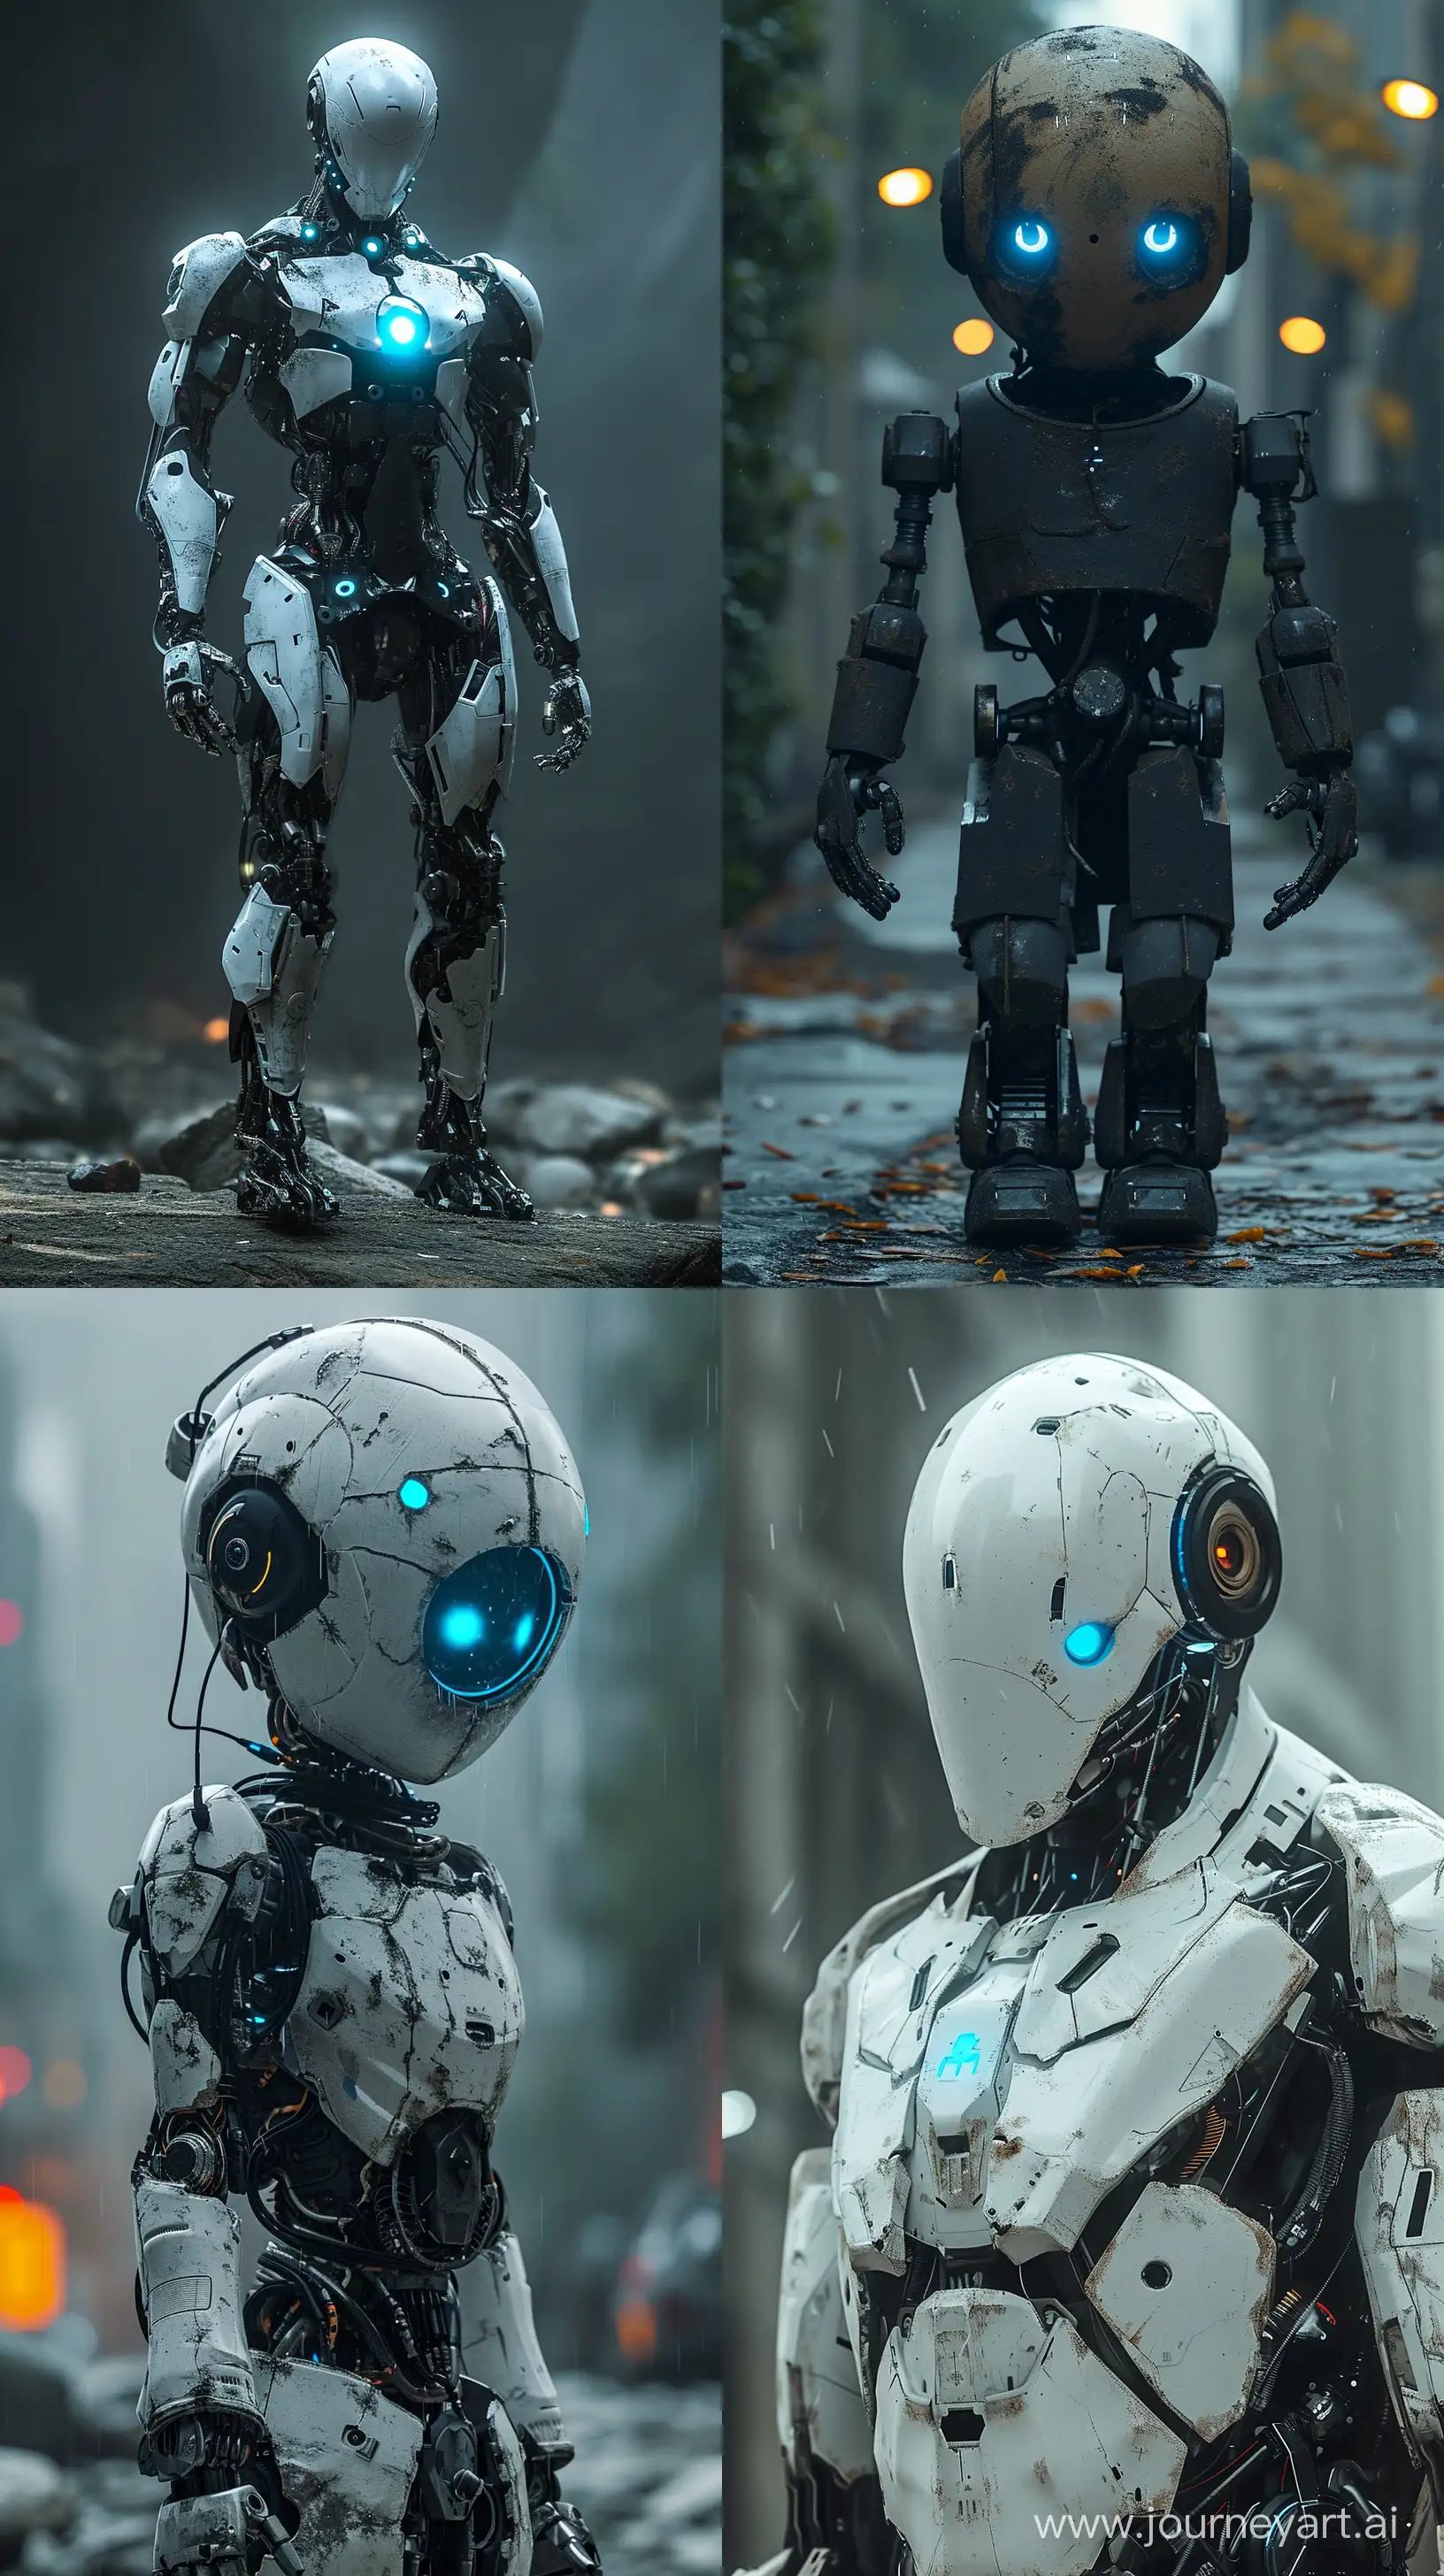 Робот стоит в полный рост со светящимися голубыми глазами, робот сломанный, поломанный робот, стоит в интересной необычной позе, 8K::1.2, V-ray, realism, --s 300 --ar 9:16